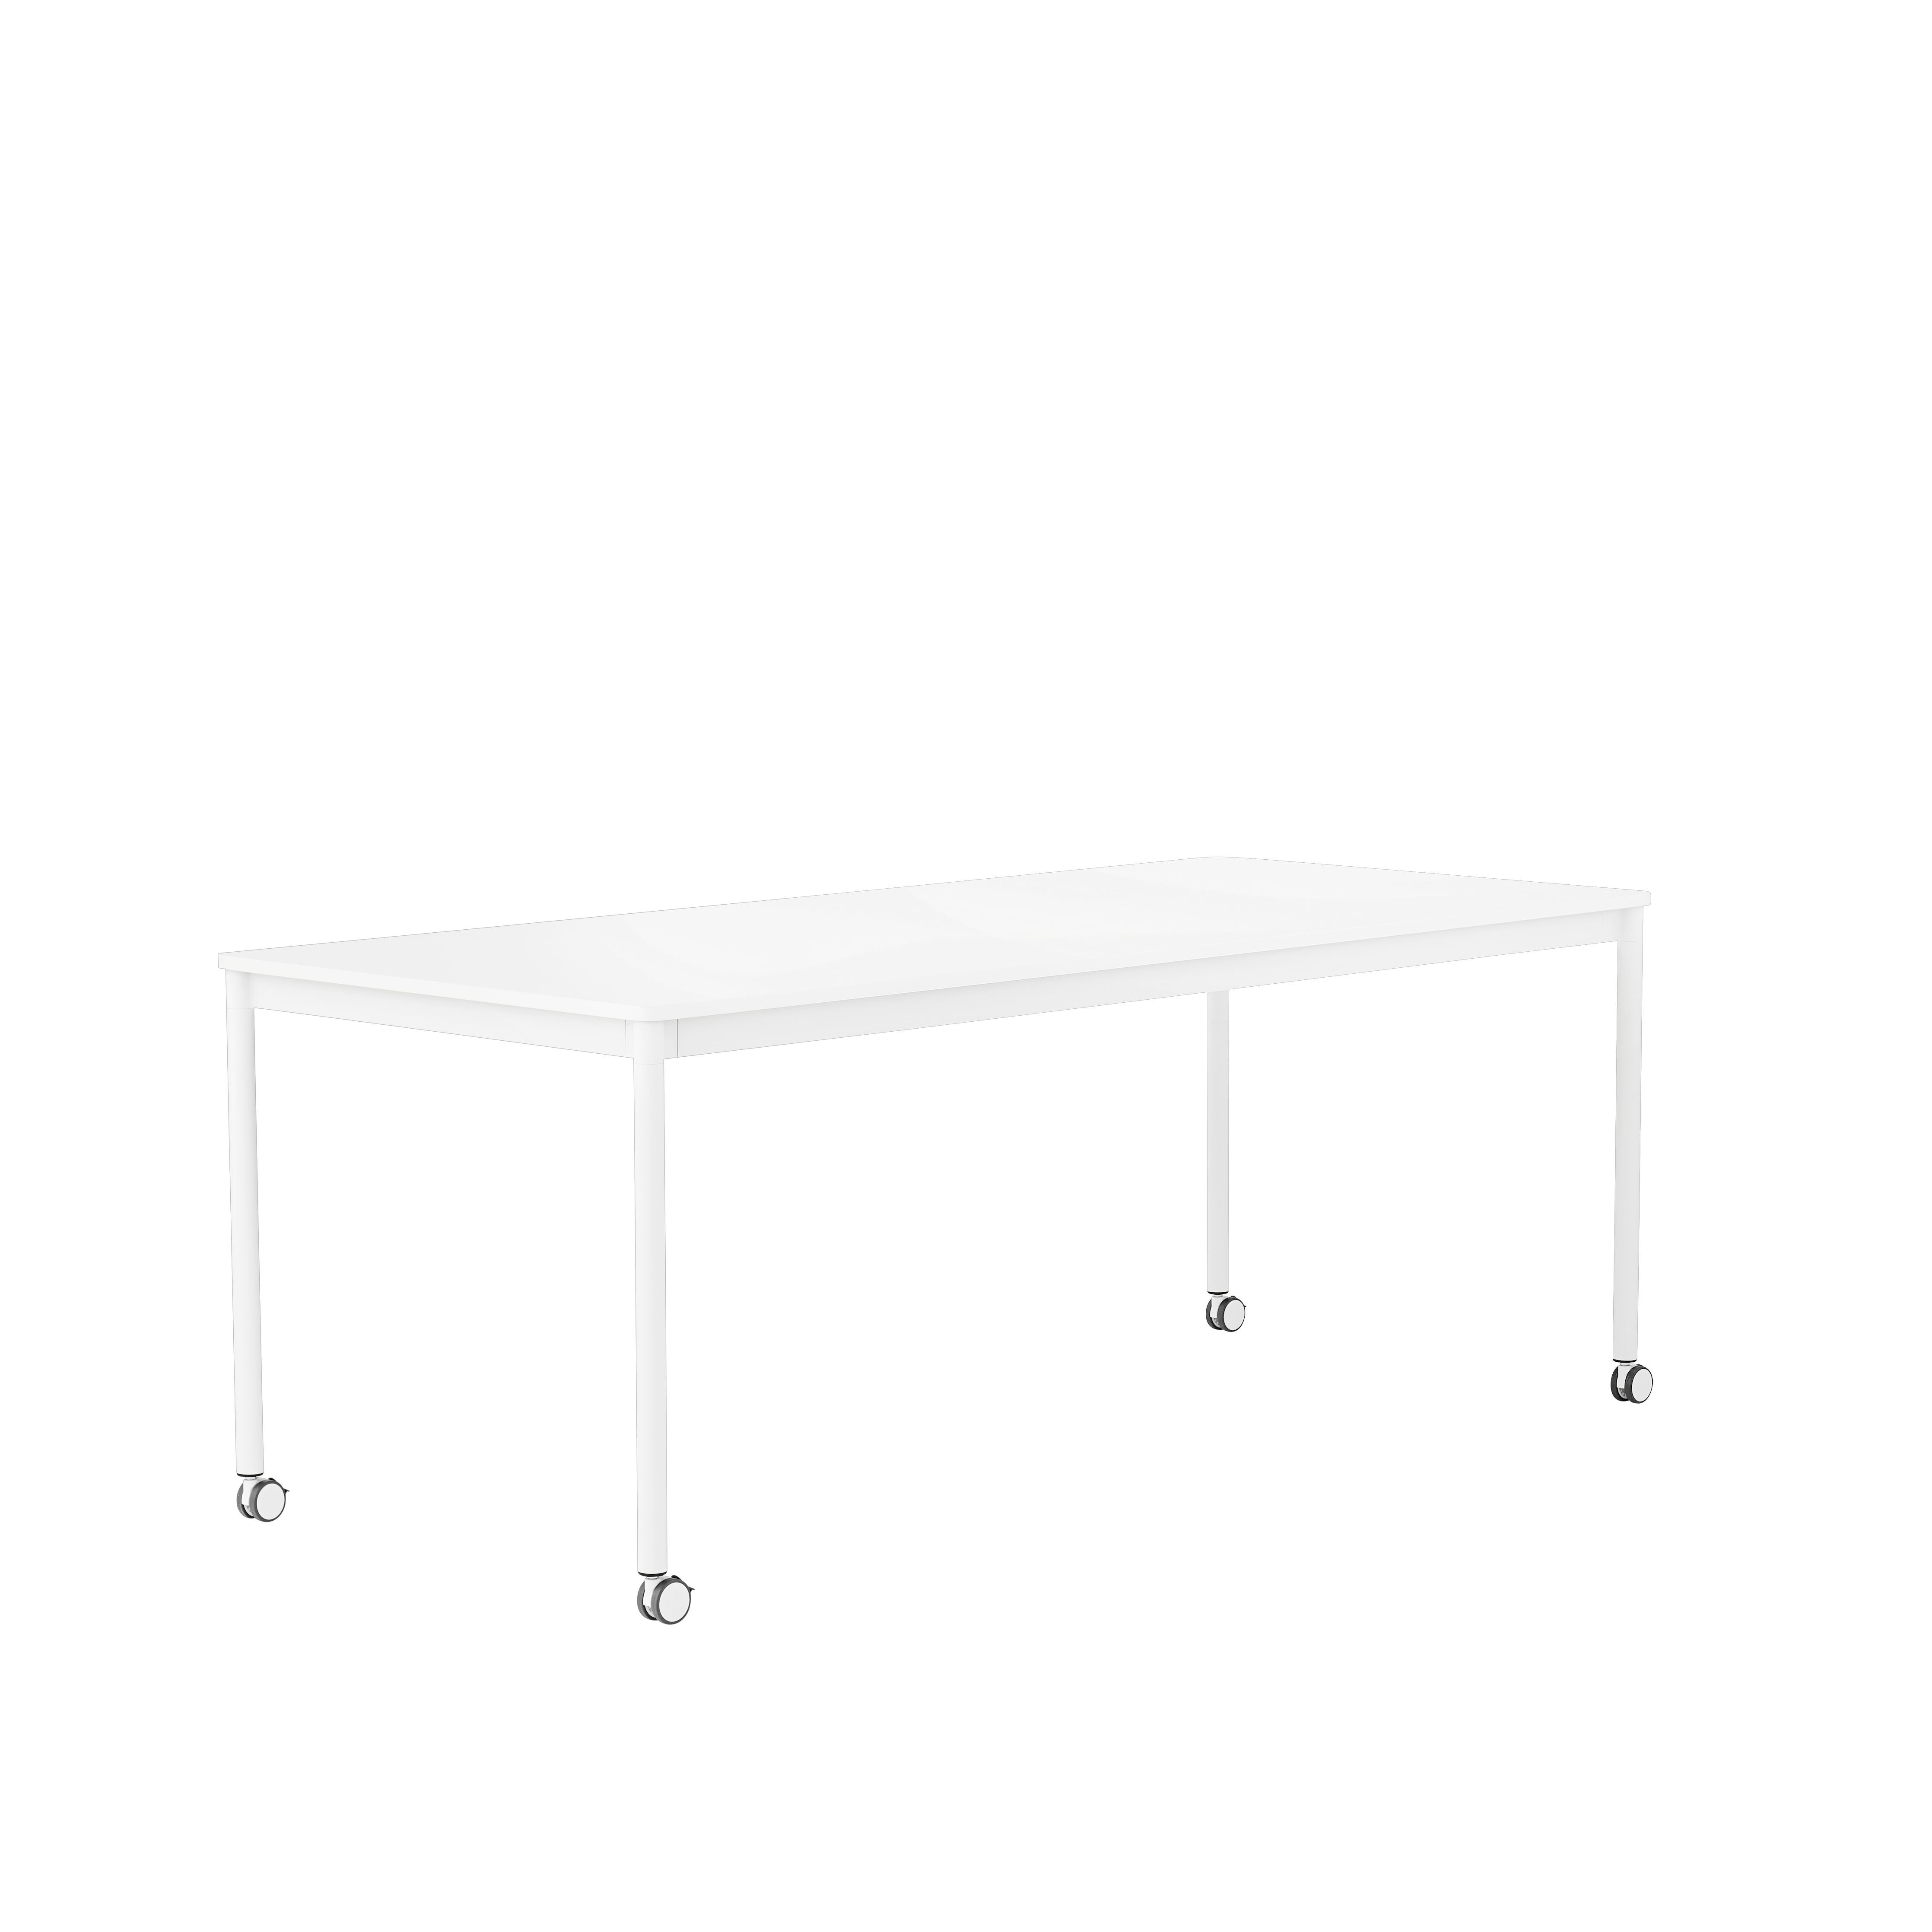 Muuto Base High Table M. Rolls 190x85x105 Cm, Weißes Laminat/Weißer Rahmen